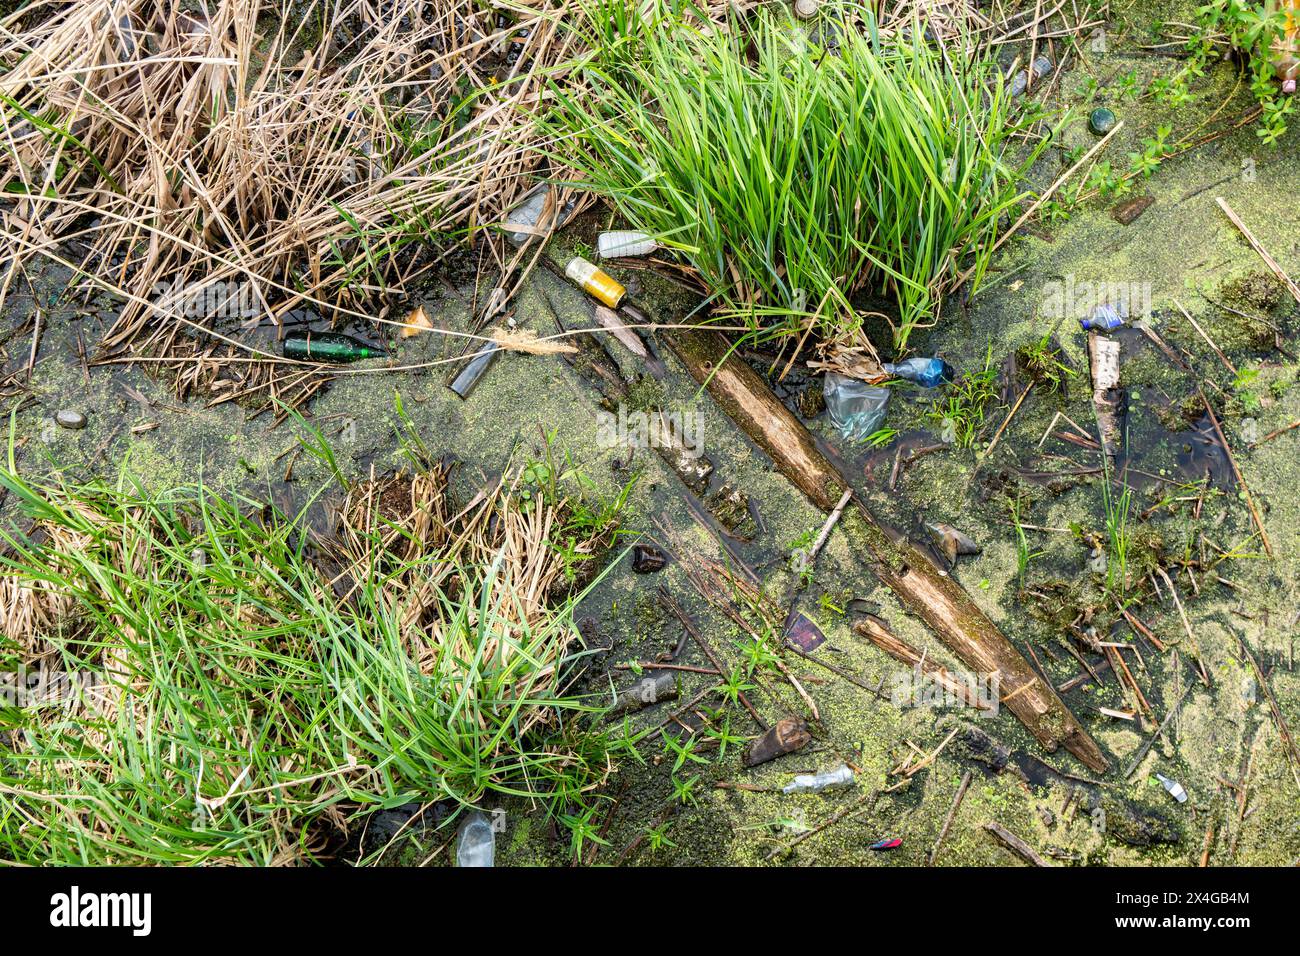 Verschmutztes Teichwasser mit Streustreu zwischen grünem Gras und totem Schilf, einschließlich Flaschen, Plastik und sonstigem Schmutz Stockfoto